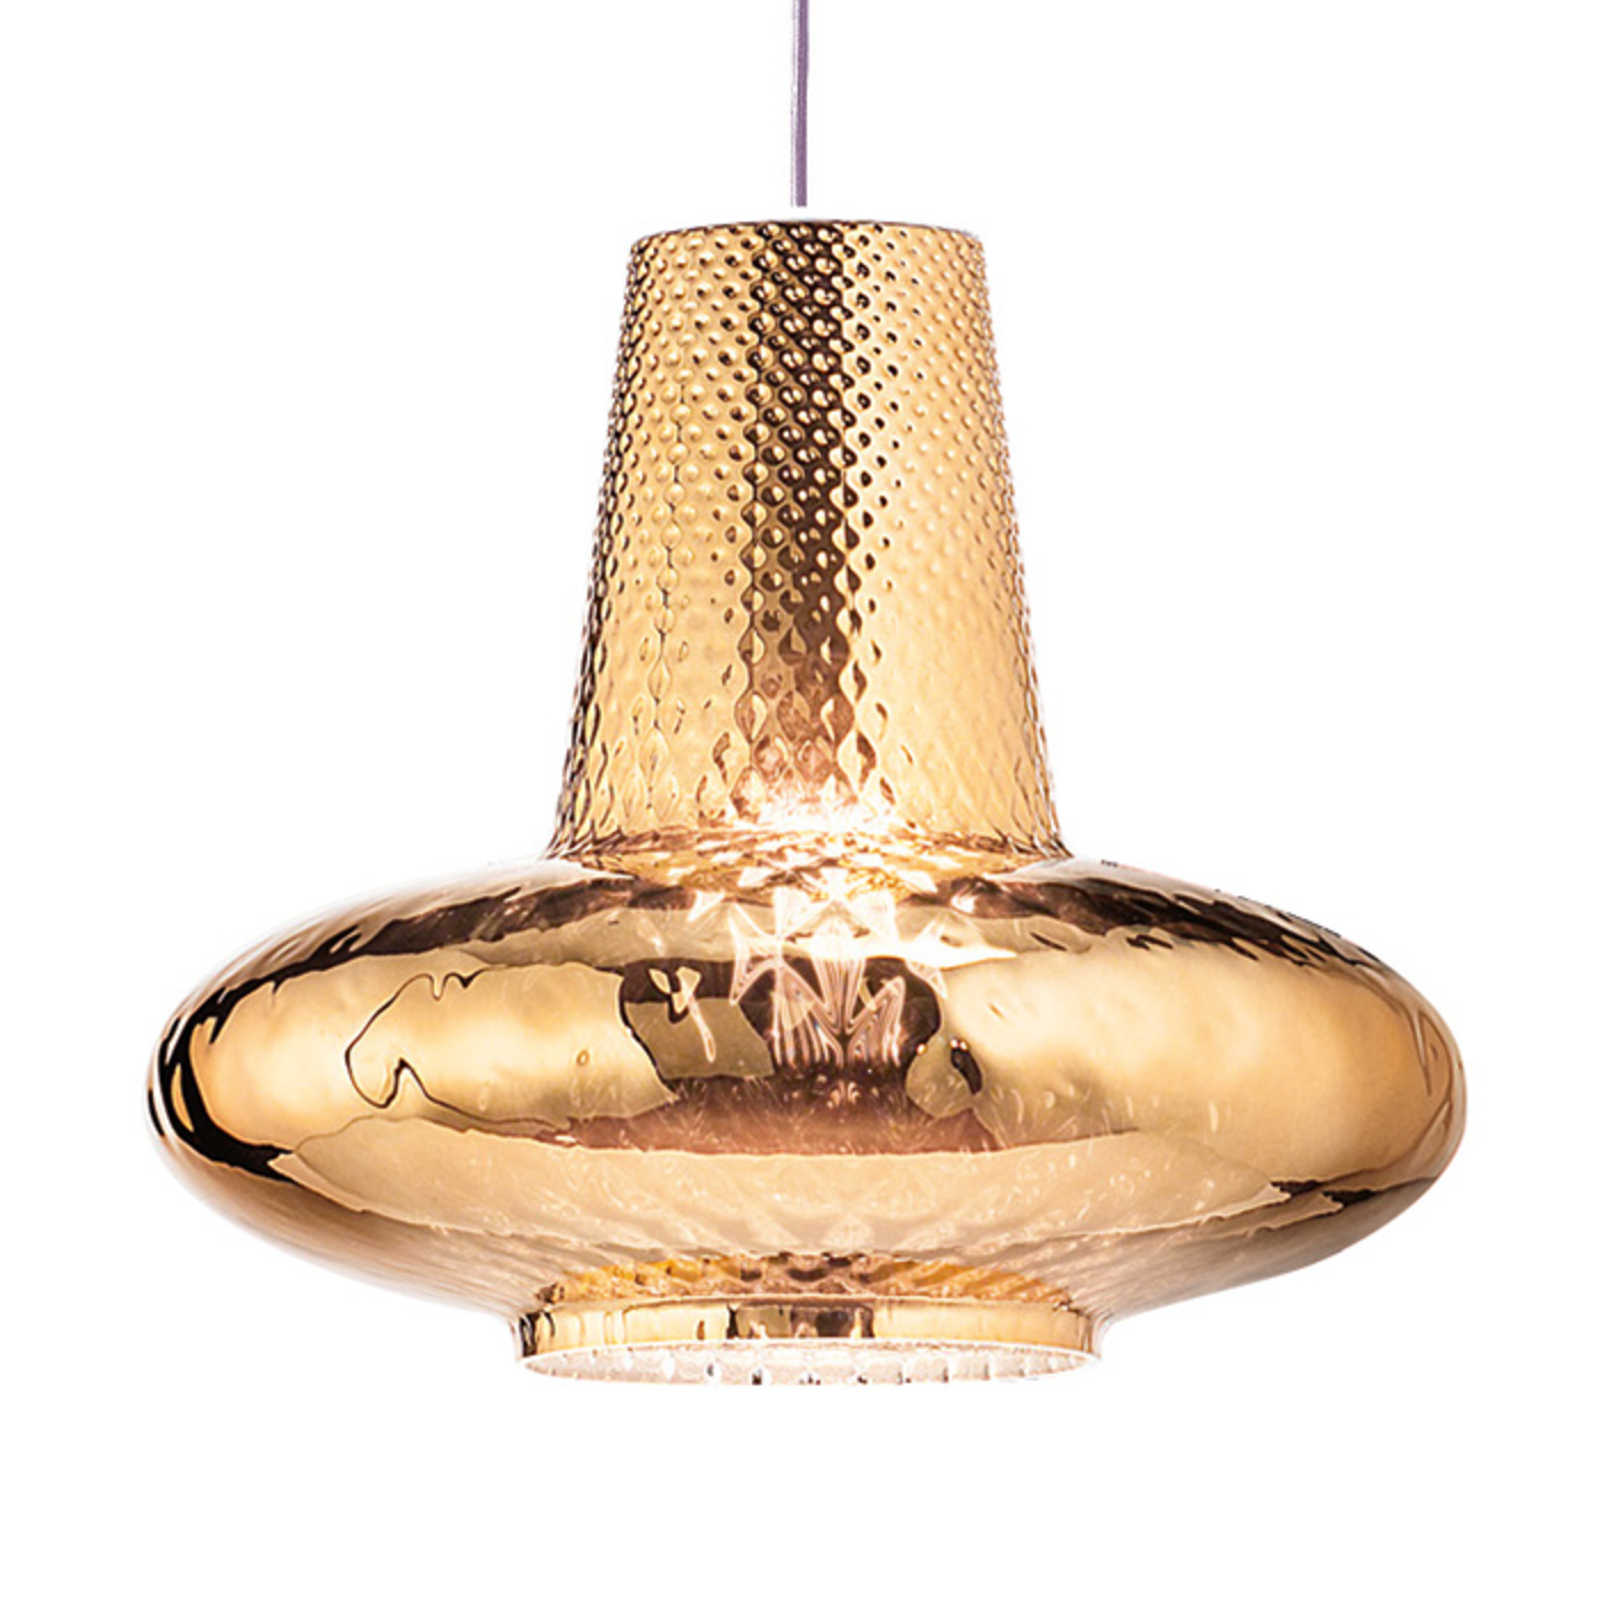 Hanglamp Giulietta 130 cm antiek goud metallic